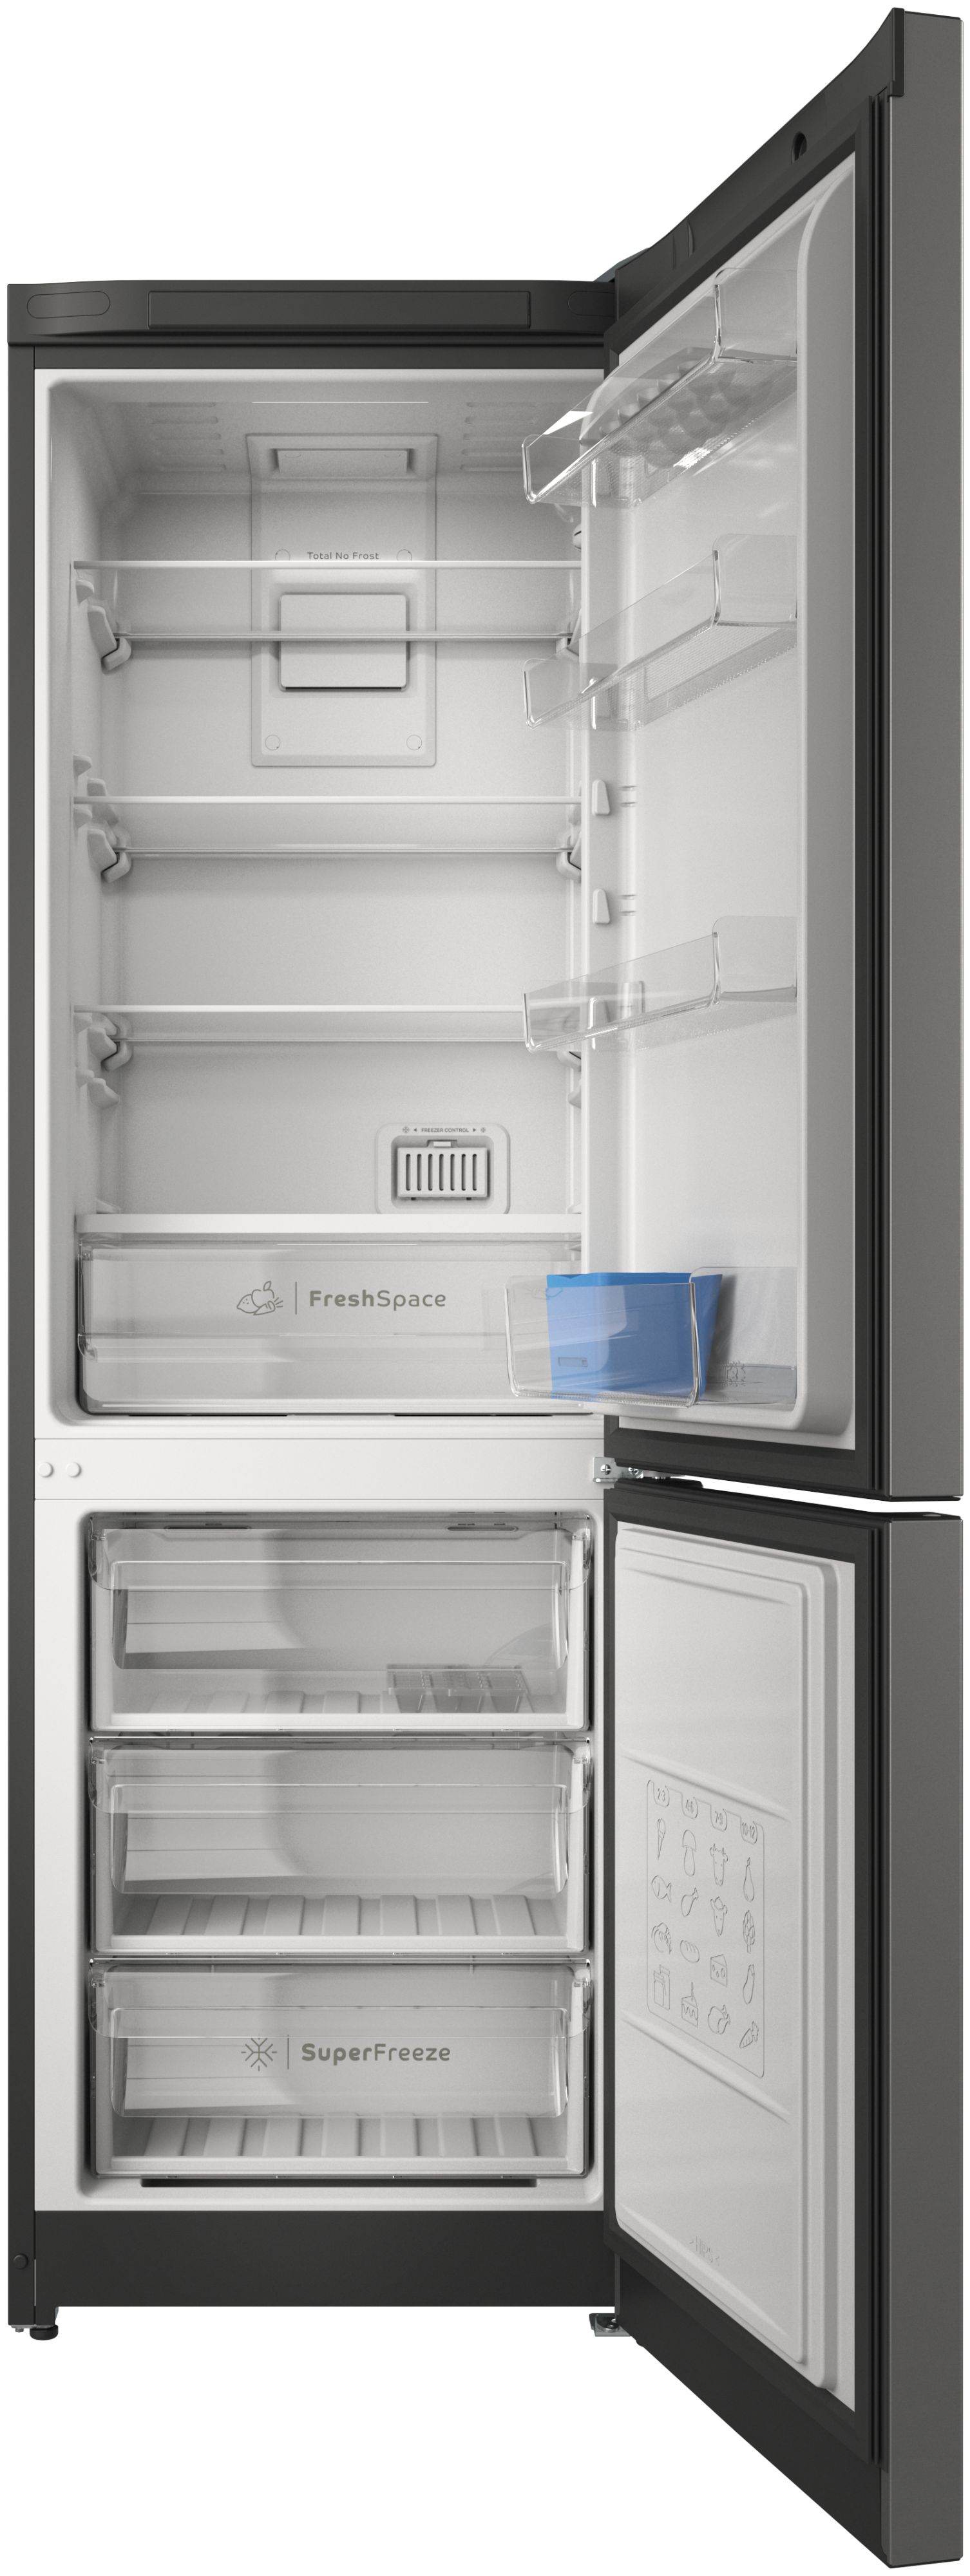 Какие холодильники лучше выбрать: беко или индезит?